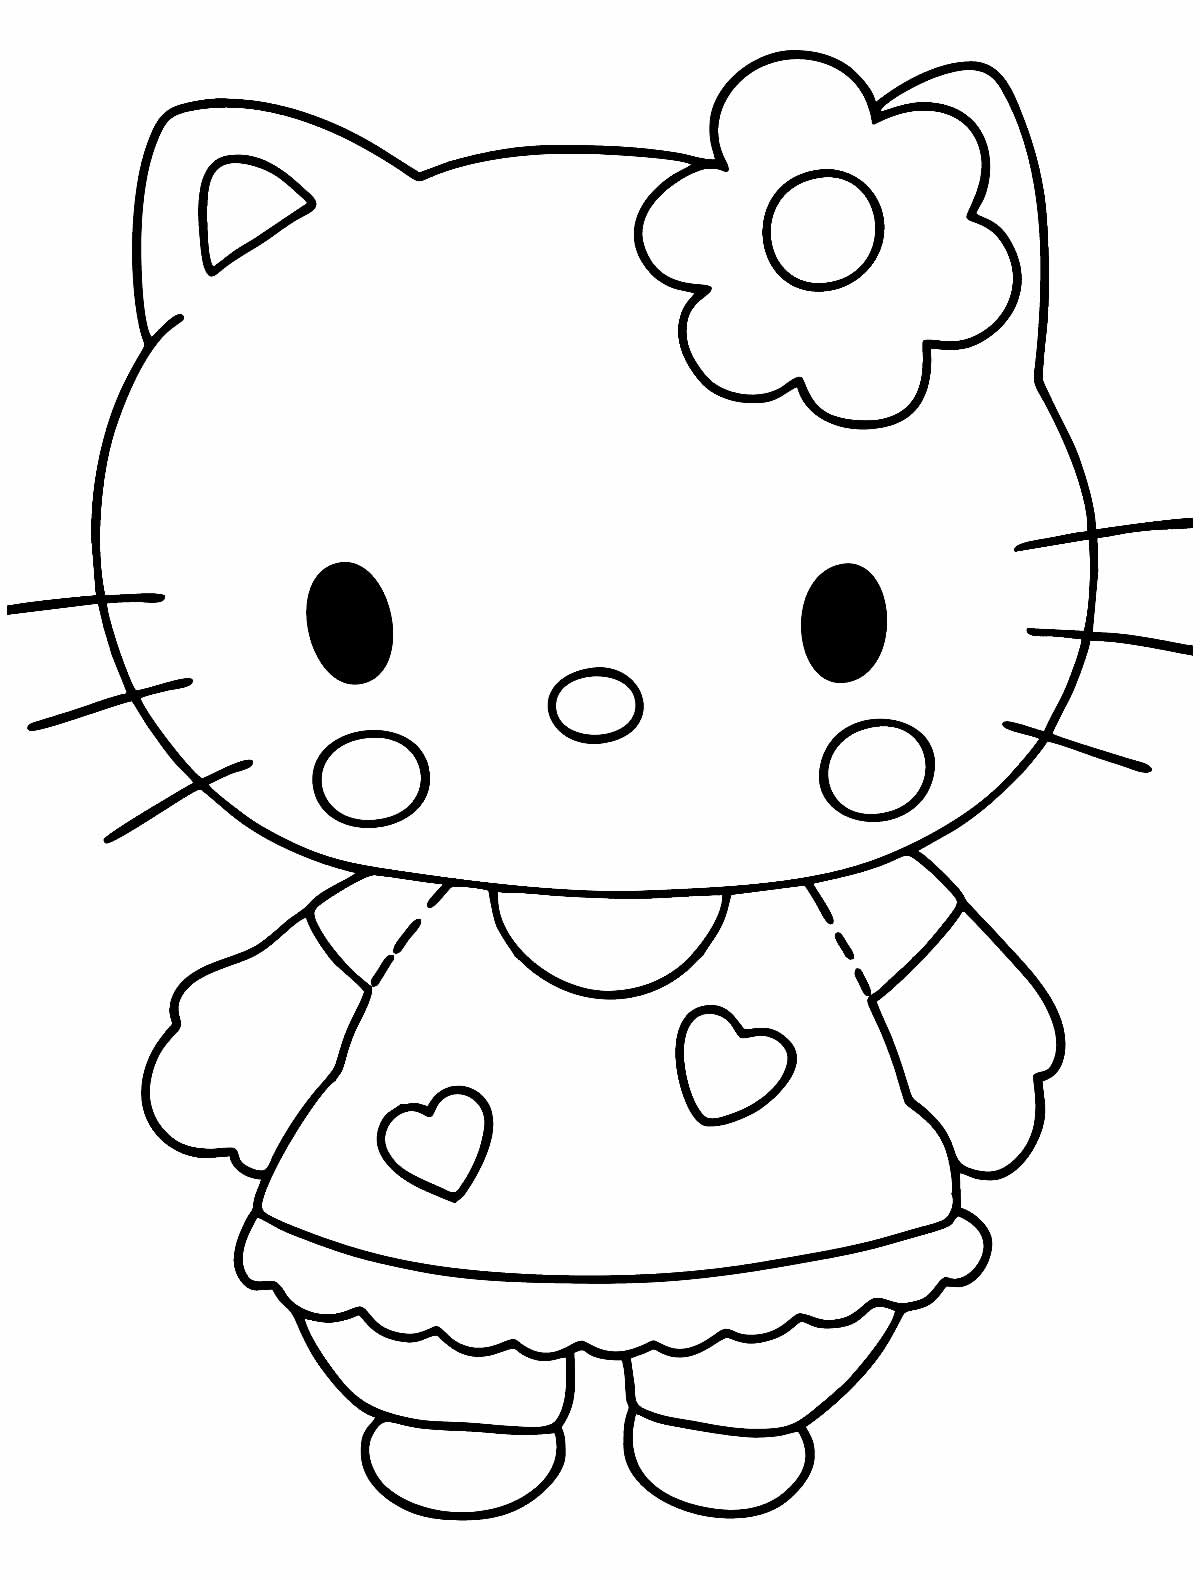 Desenho de Hello Kitty para colorir